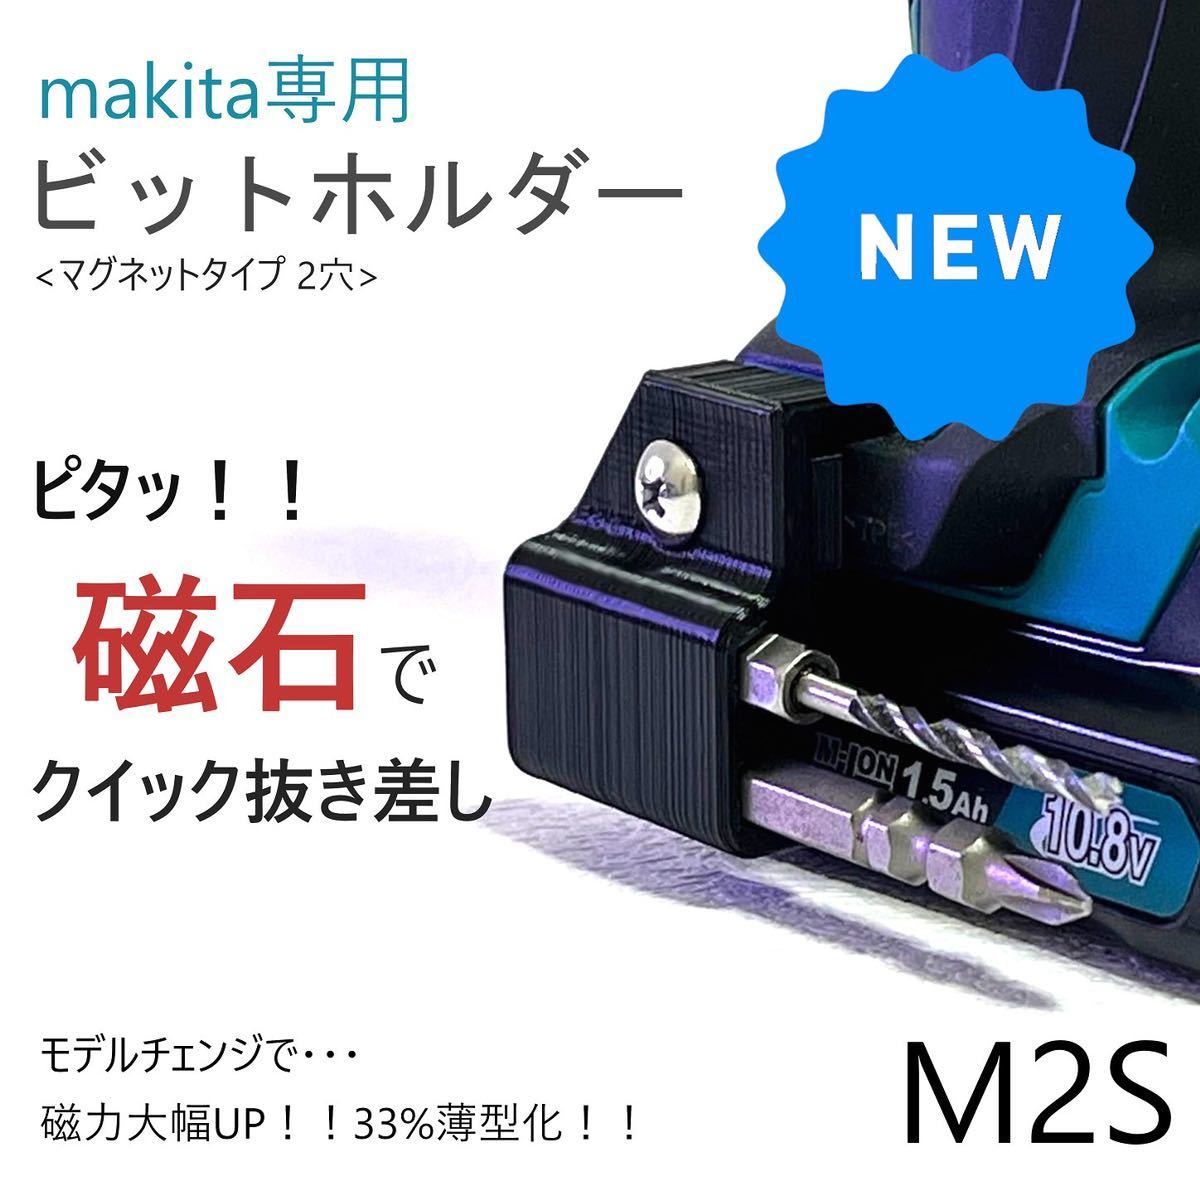 ビットホルダー [M2S] マキタ makita_画像1